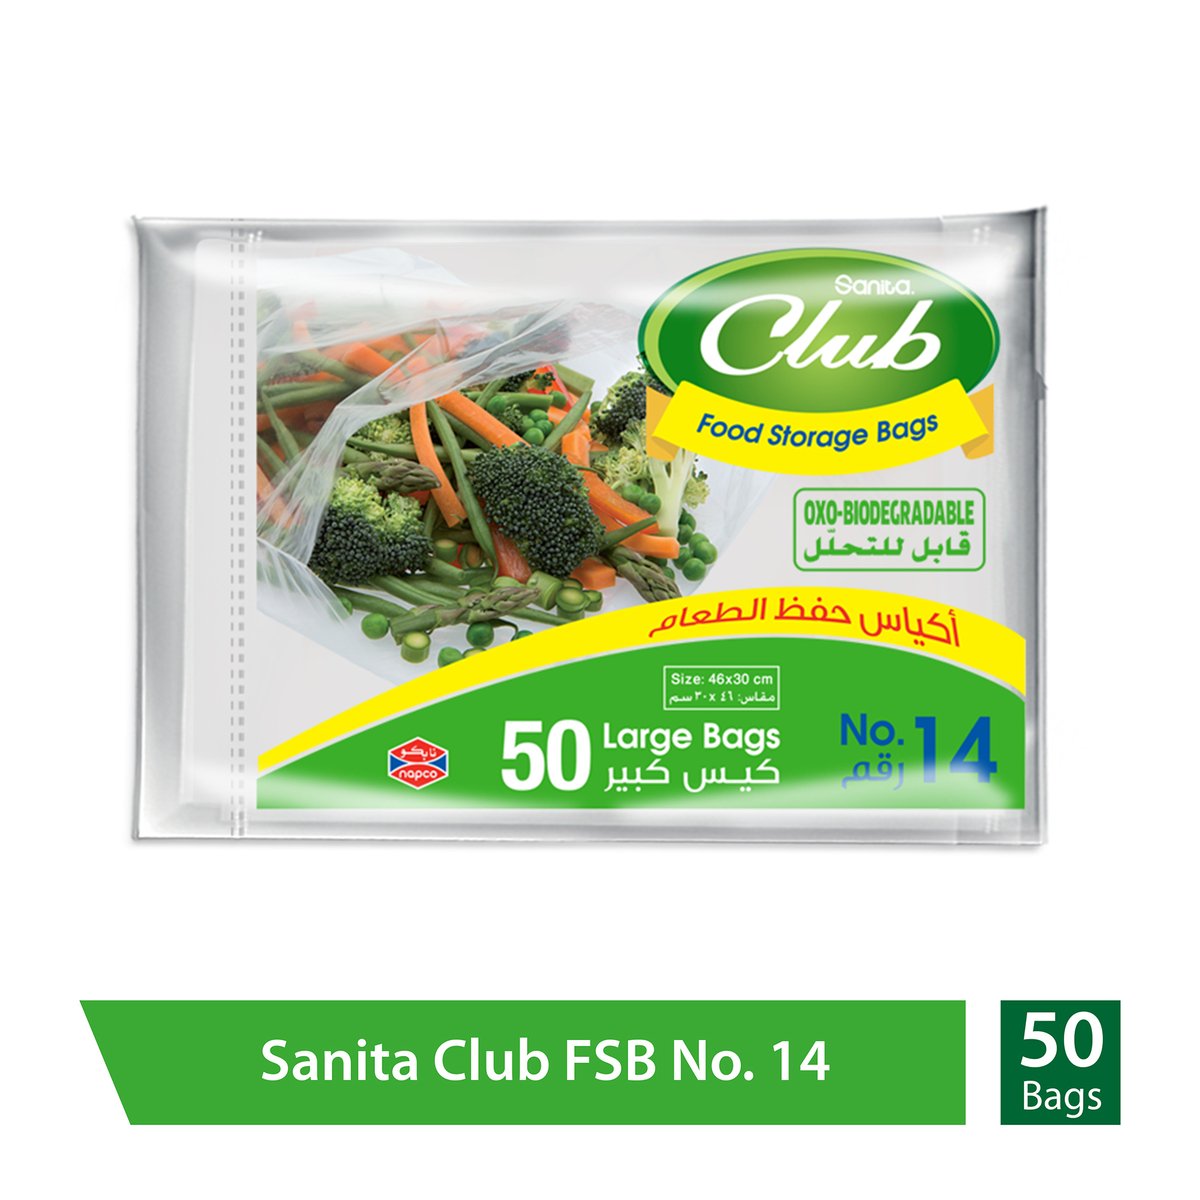 Buy Sanita Club Food Storage Bags Biodegradable #14 Size 46 x 30cm 50pcs Online at Best Price | Food Bags | Lulu KSA in UAE